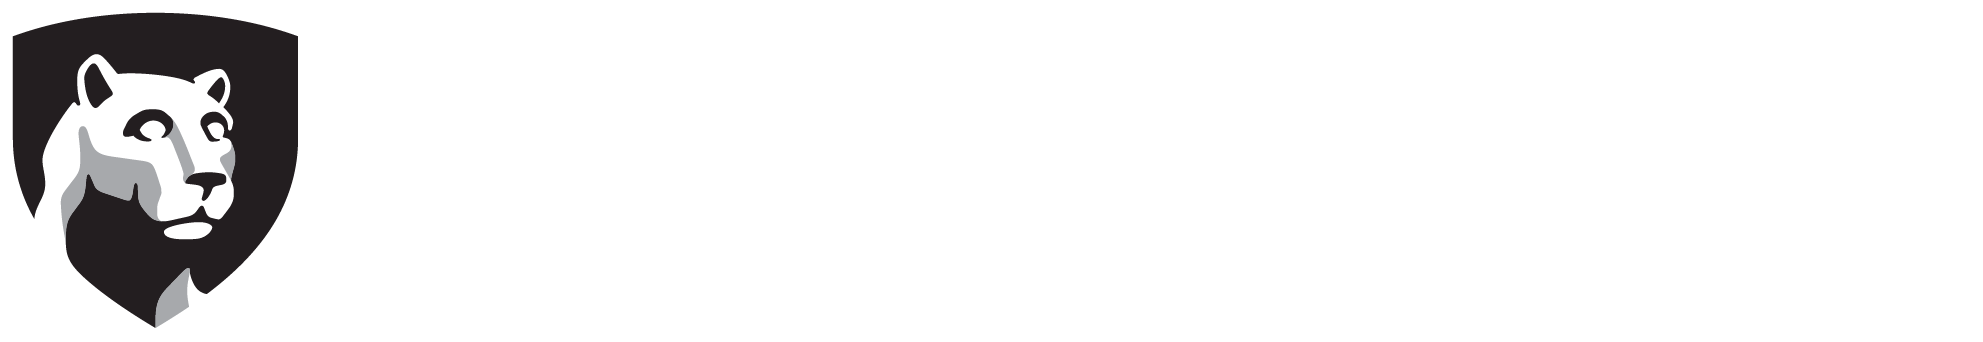 Penn State Milton S - Penn State Logo White (2024x612), Png Download